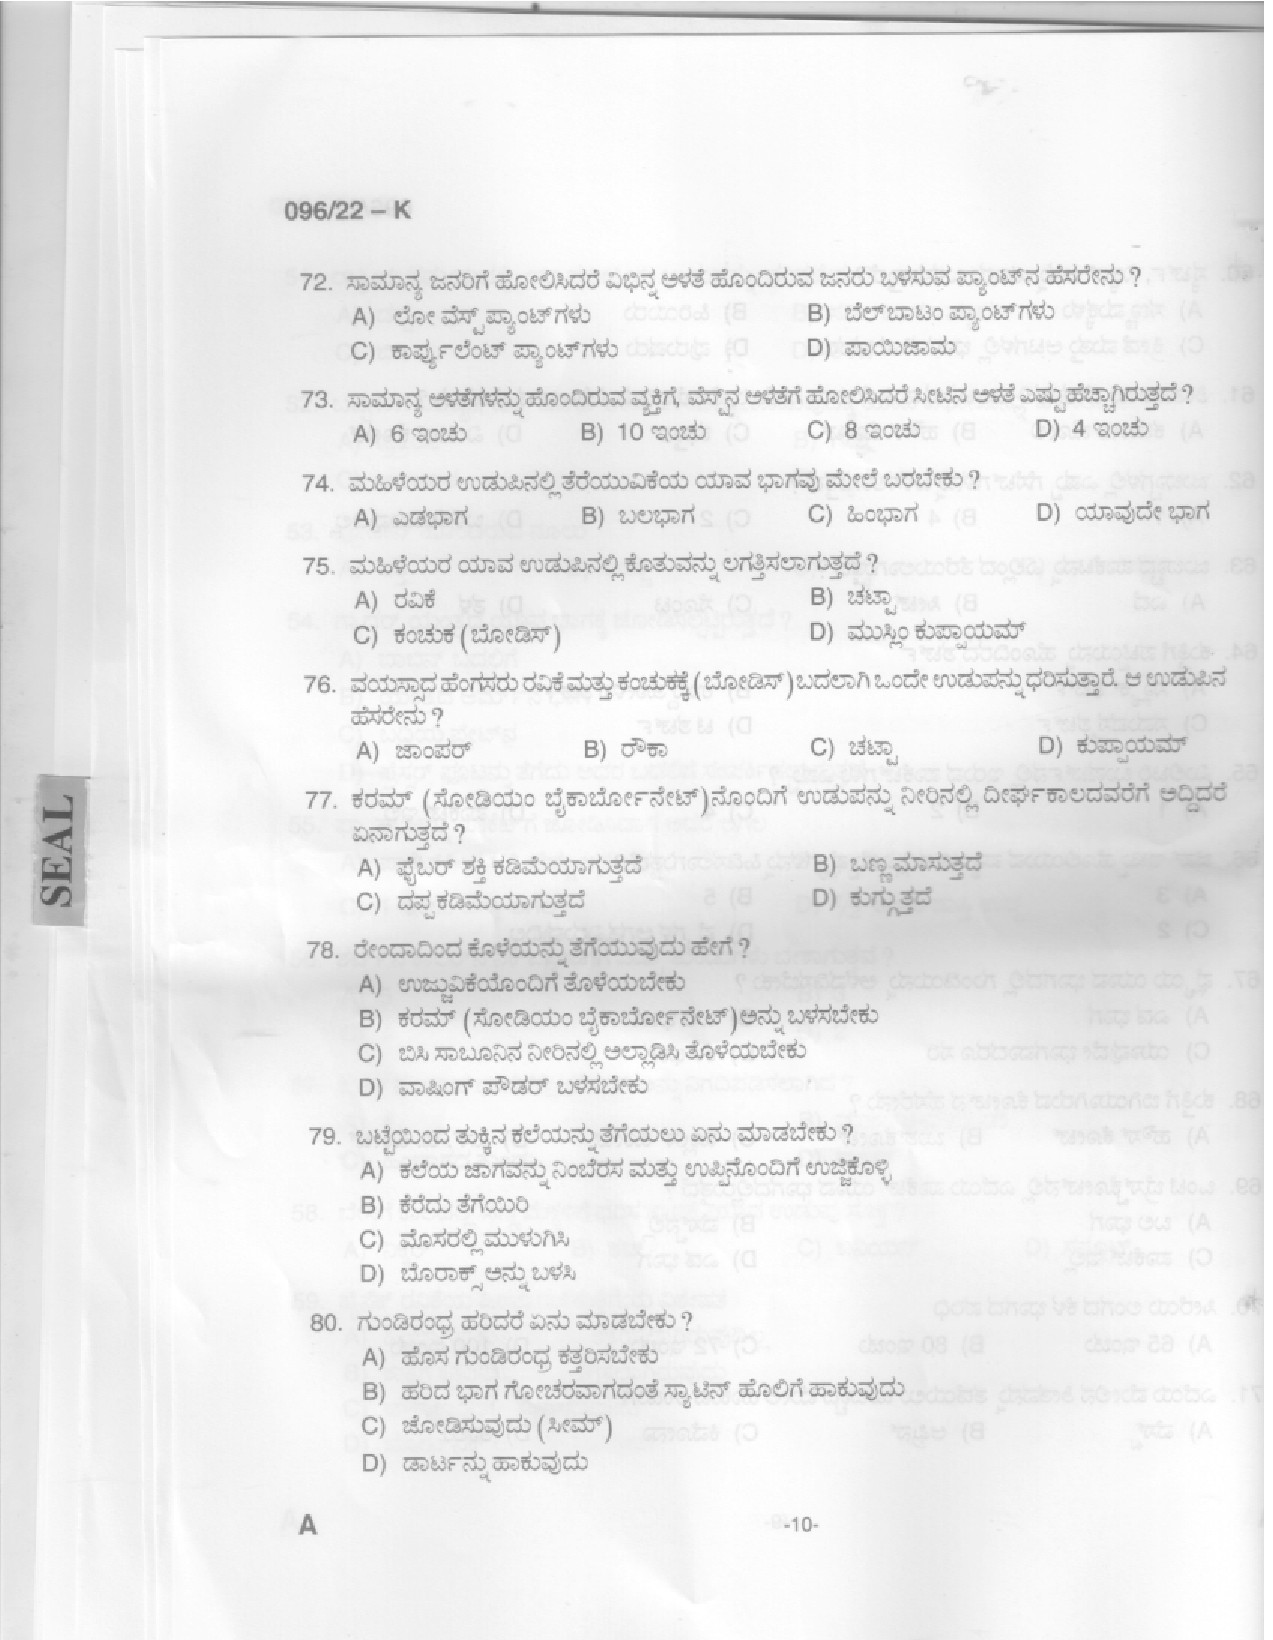 KPSC Sewing Teacher High School Kannada Exam 2022 Code 962022 8